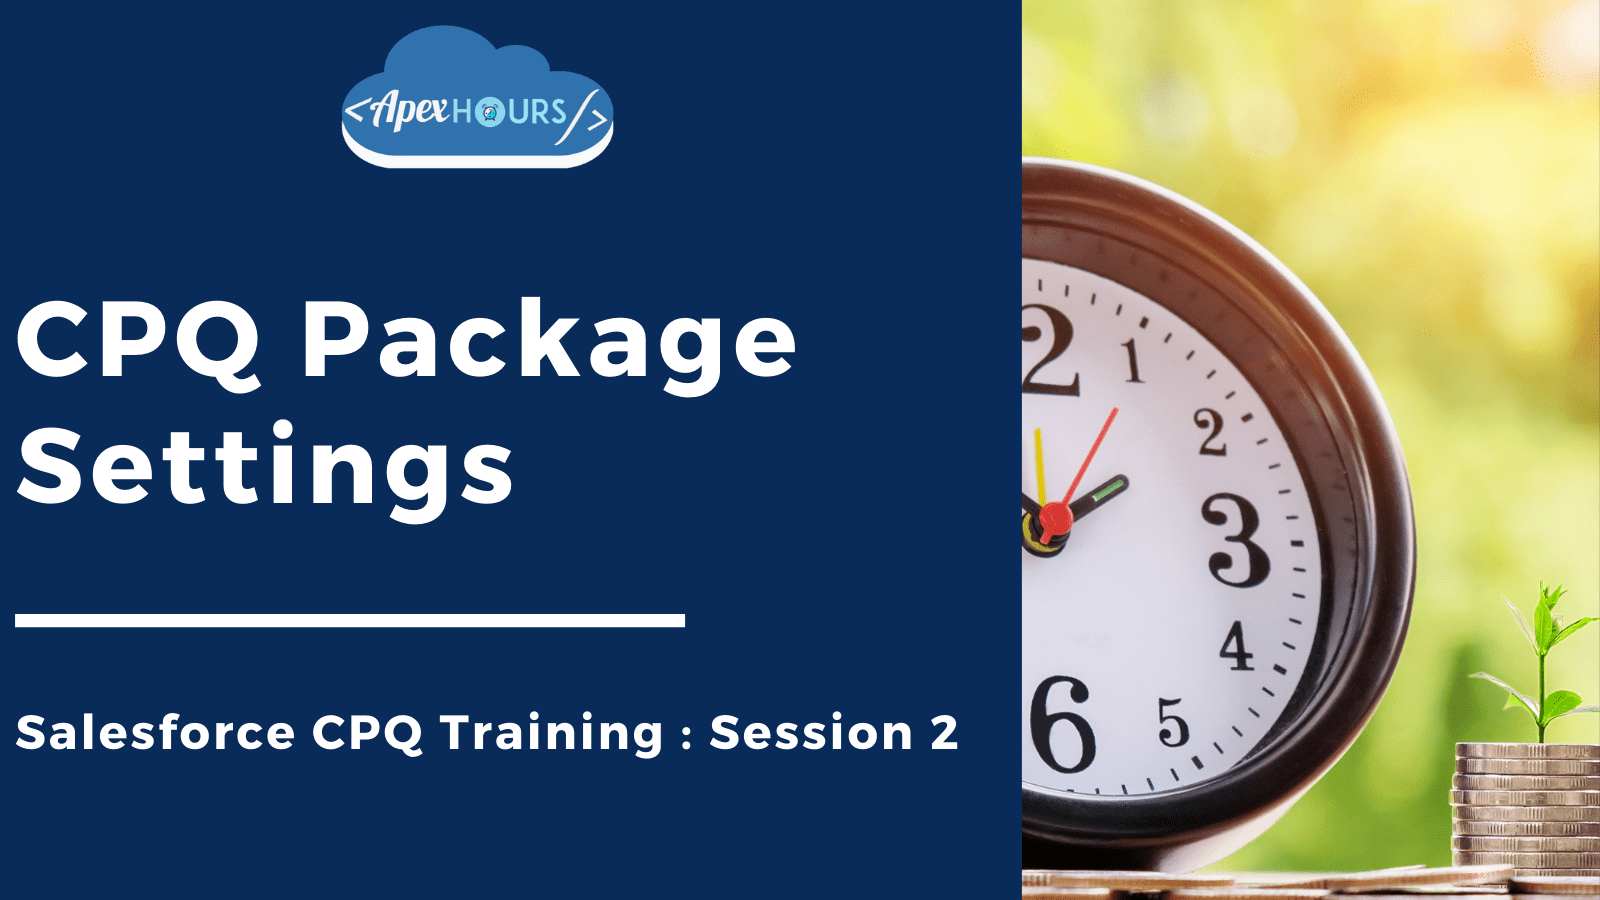 CPQ Package Settings